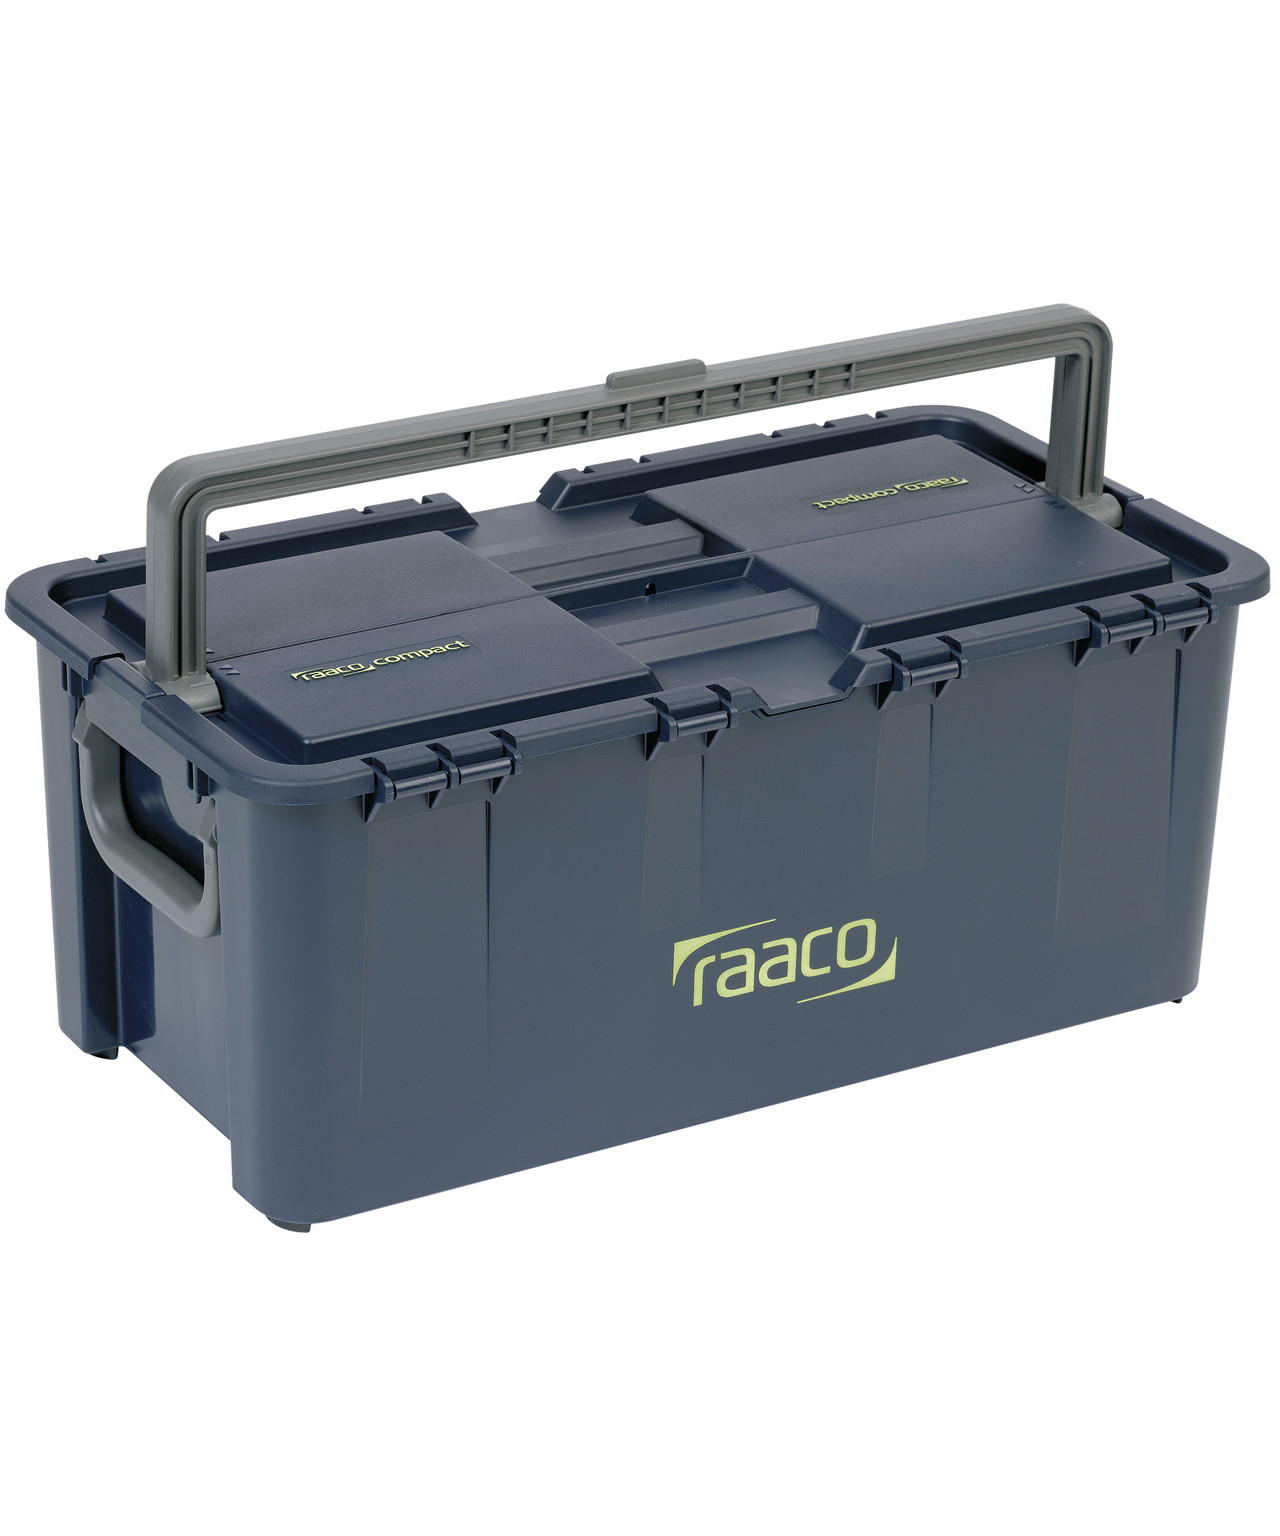 Billede af Raaco Compact 37 værktøjskasse hos Specialbutikken